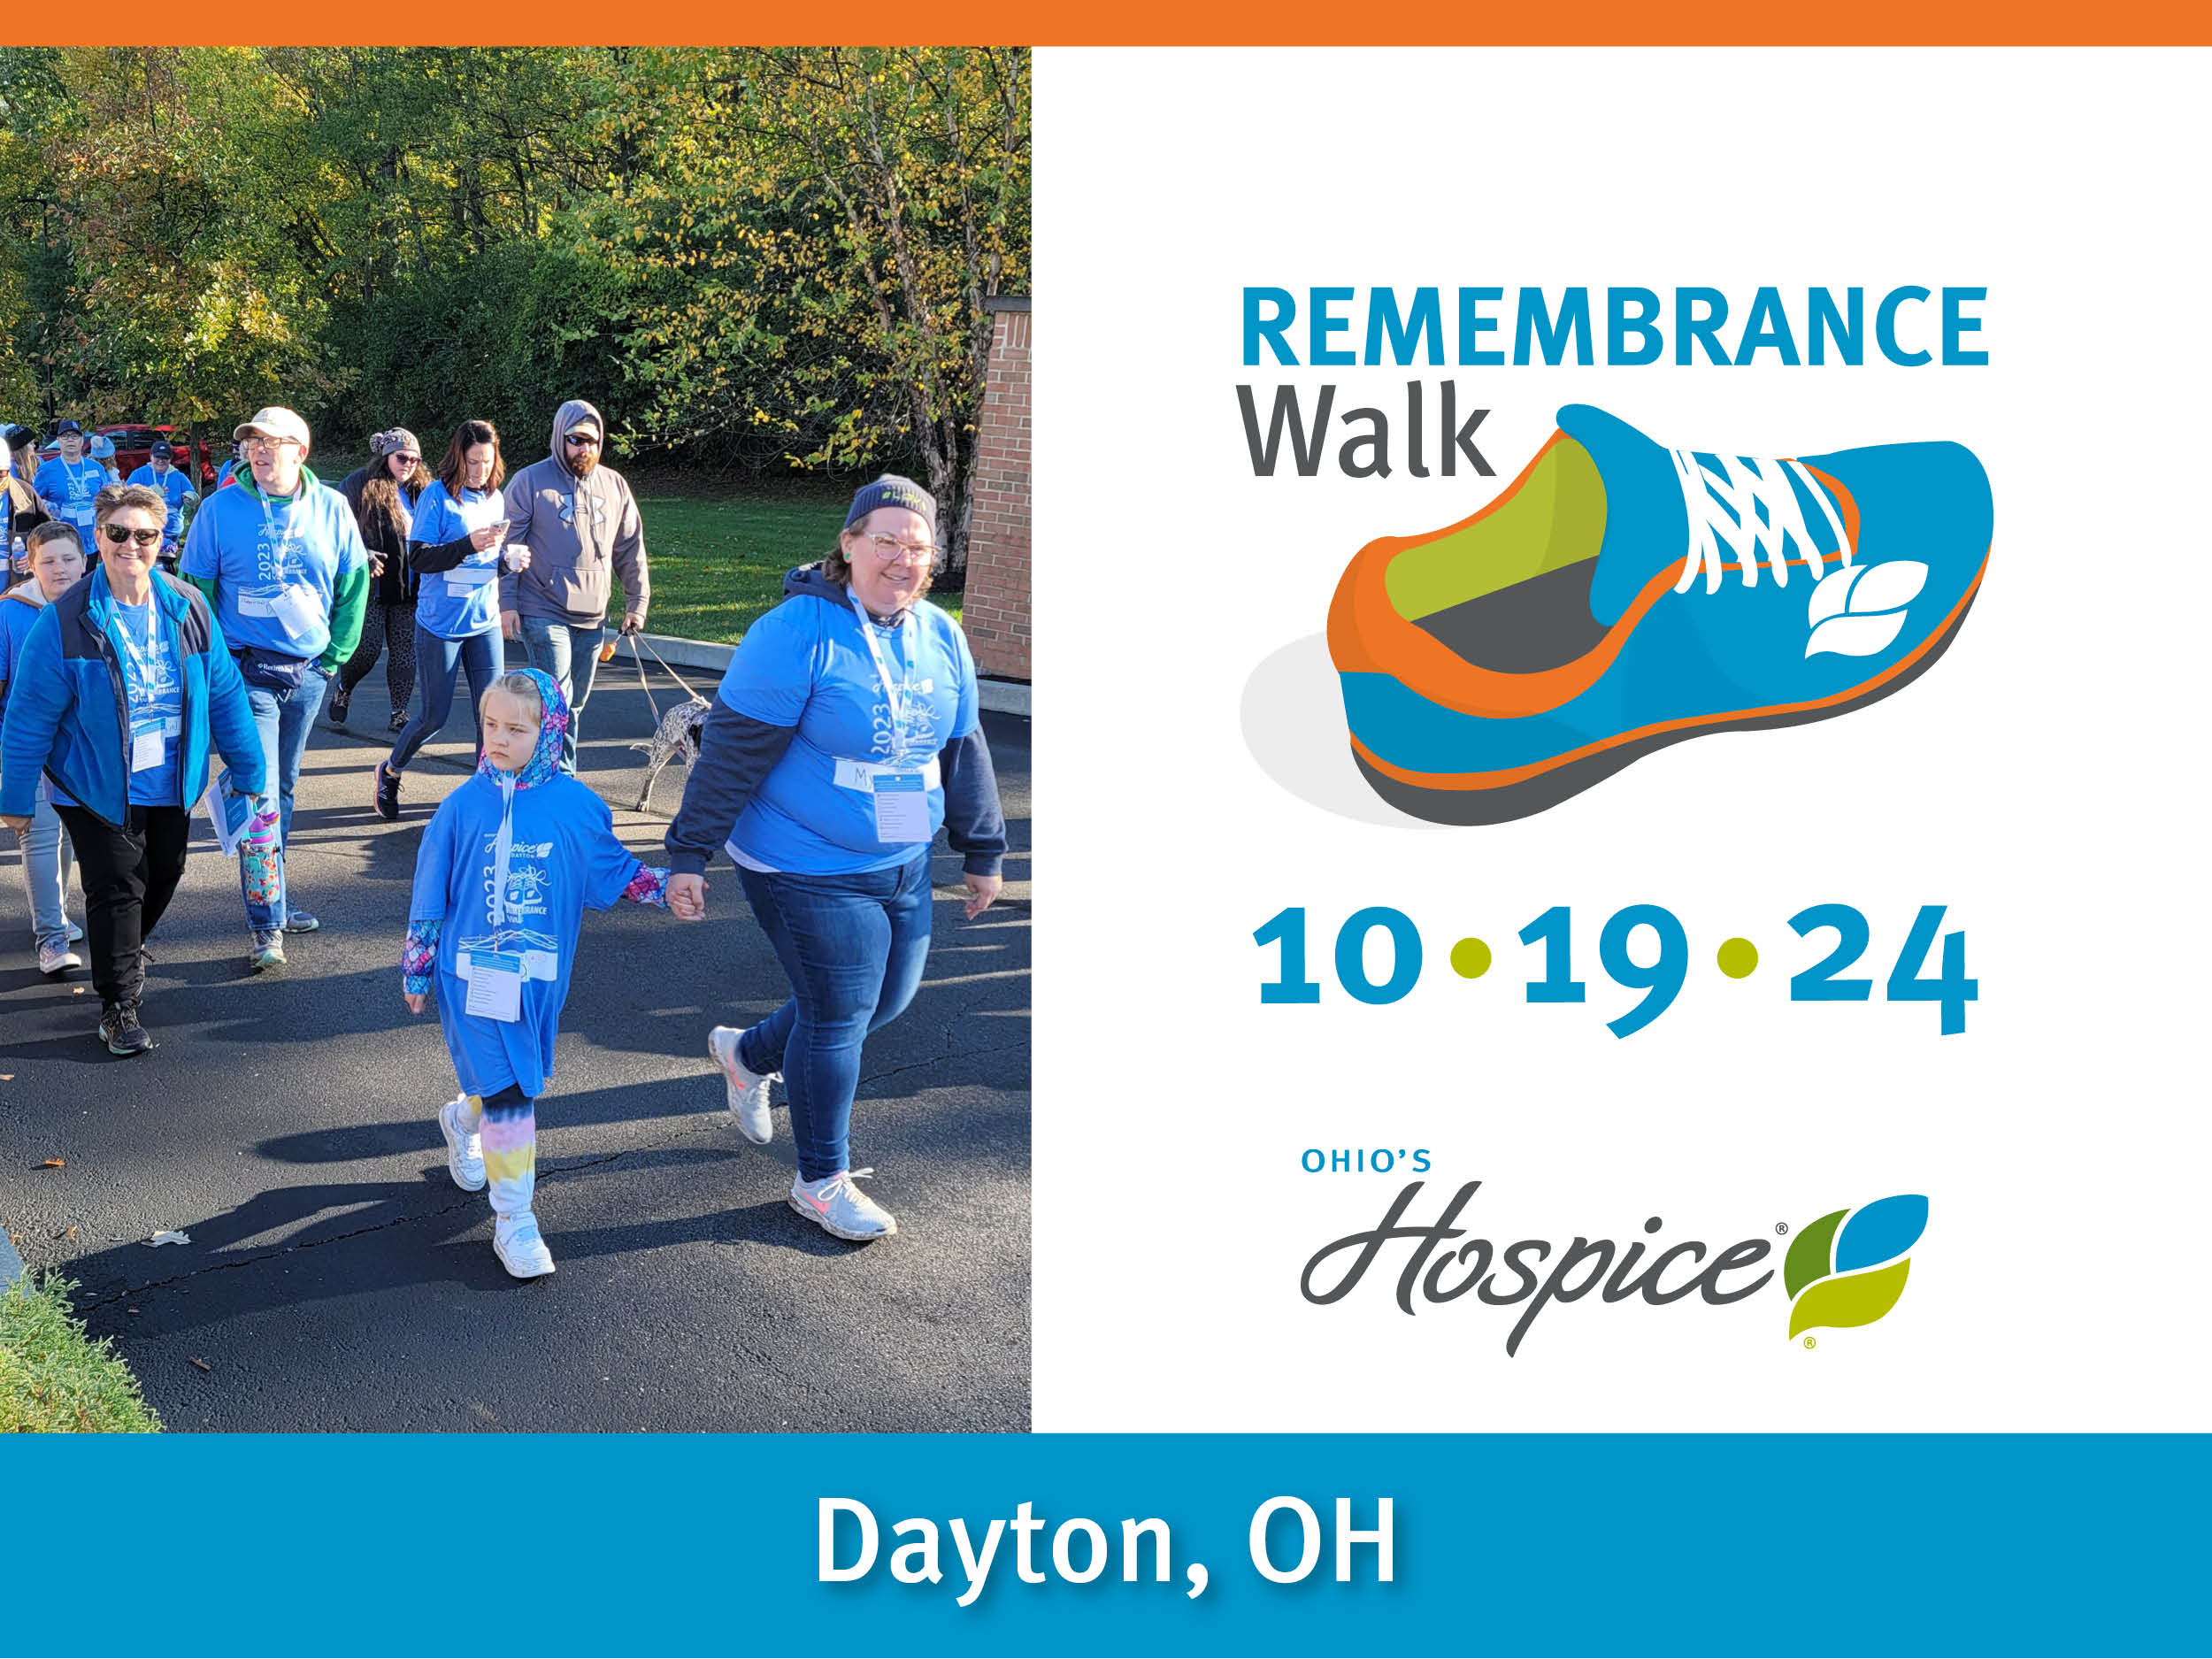 Remembrance Walk 10.19.24 Dayton, OH